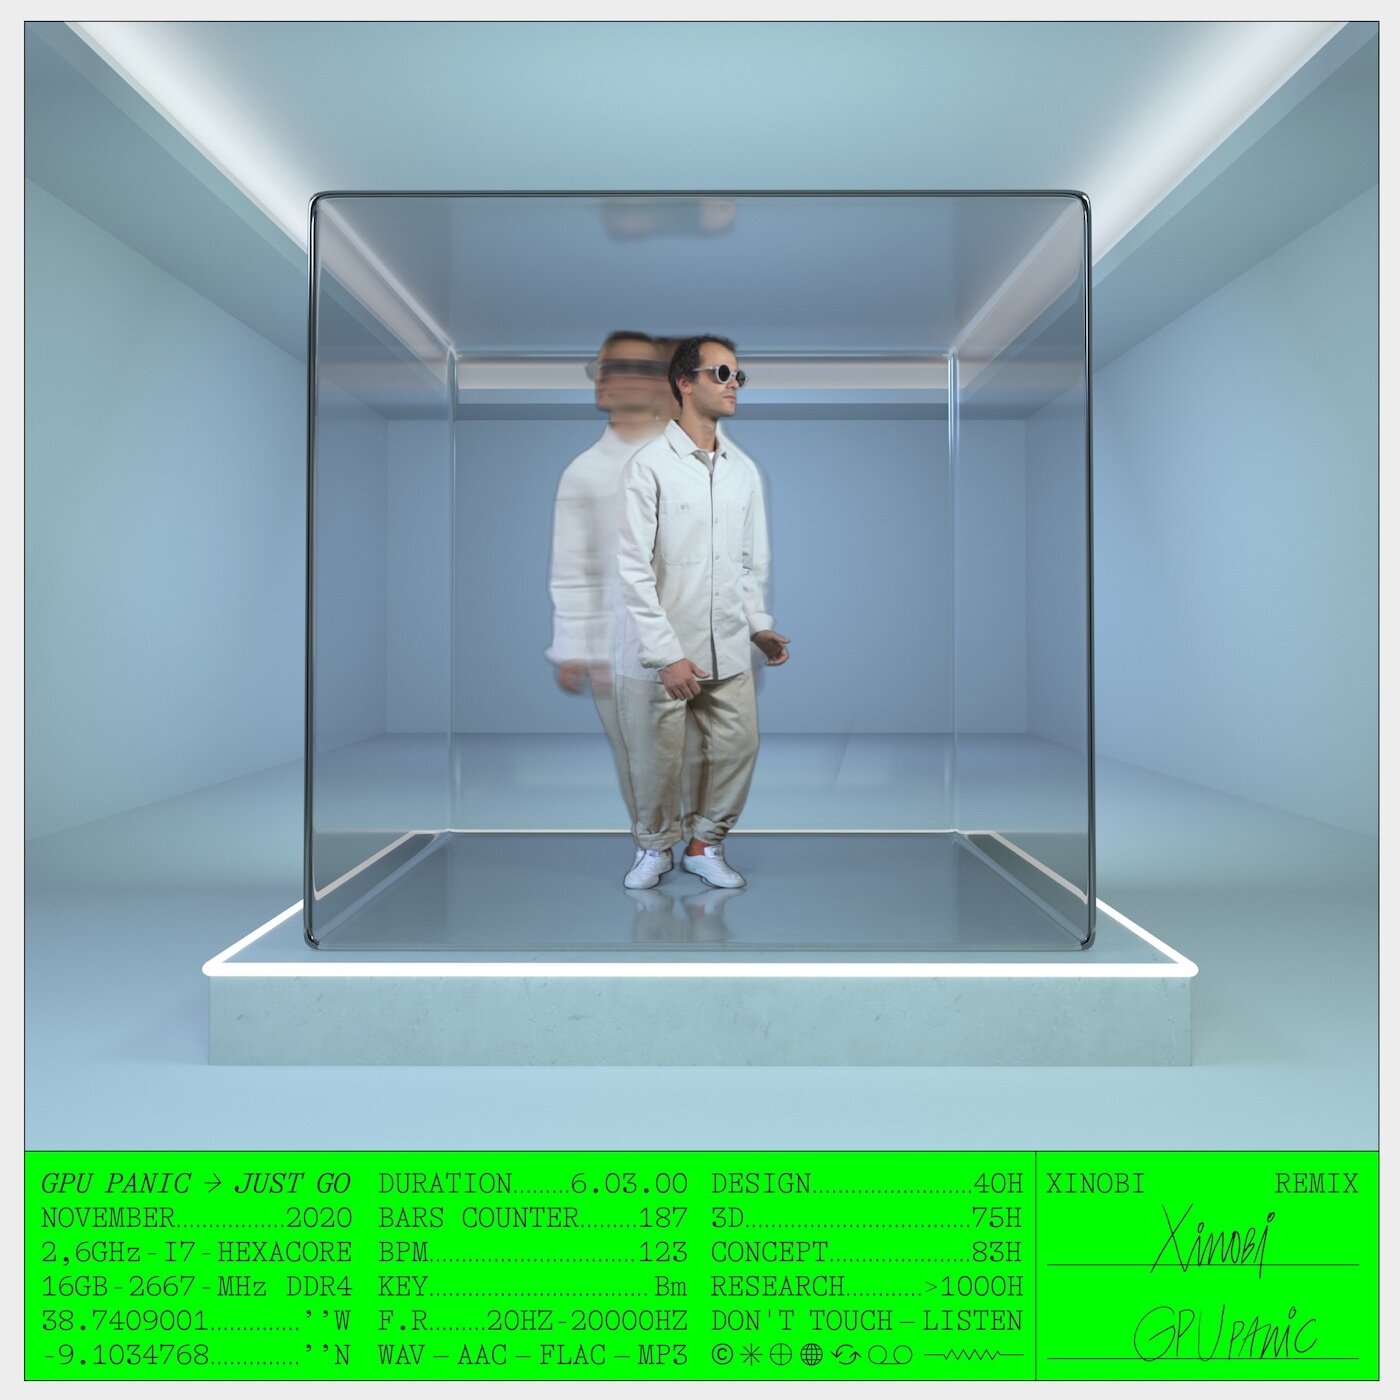 DT118R: GPU Panic - Just Go (Xinobi Remix)